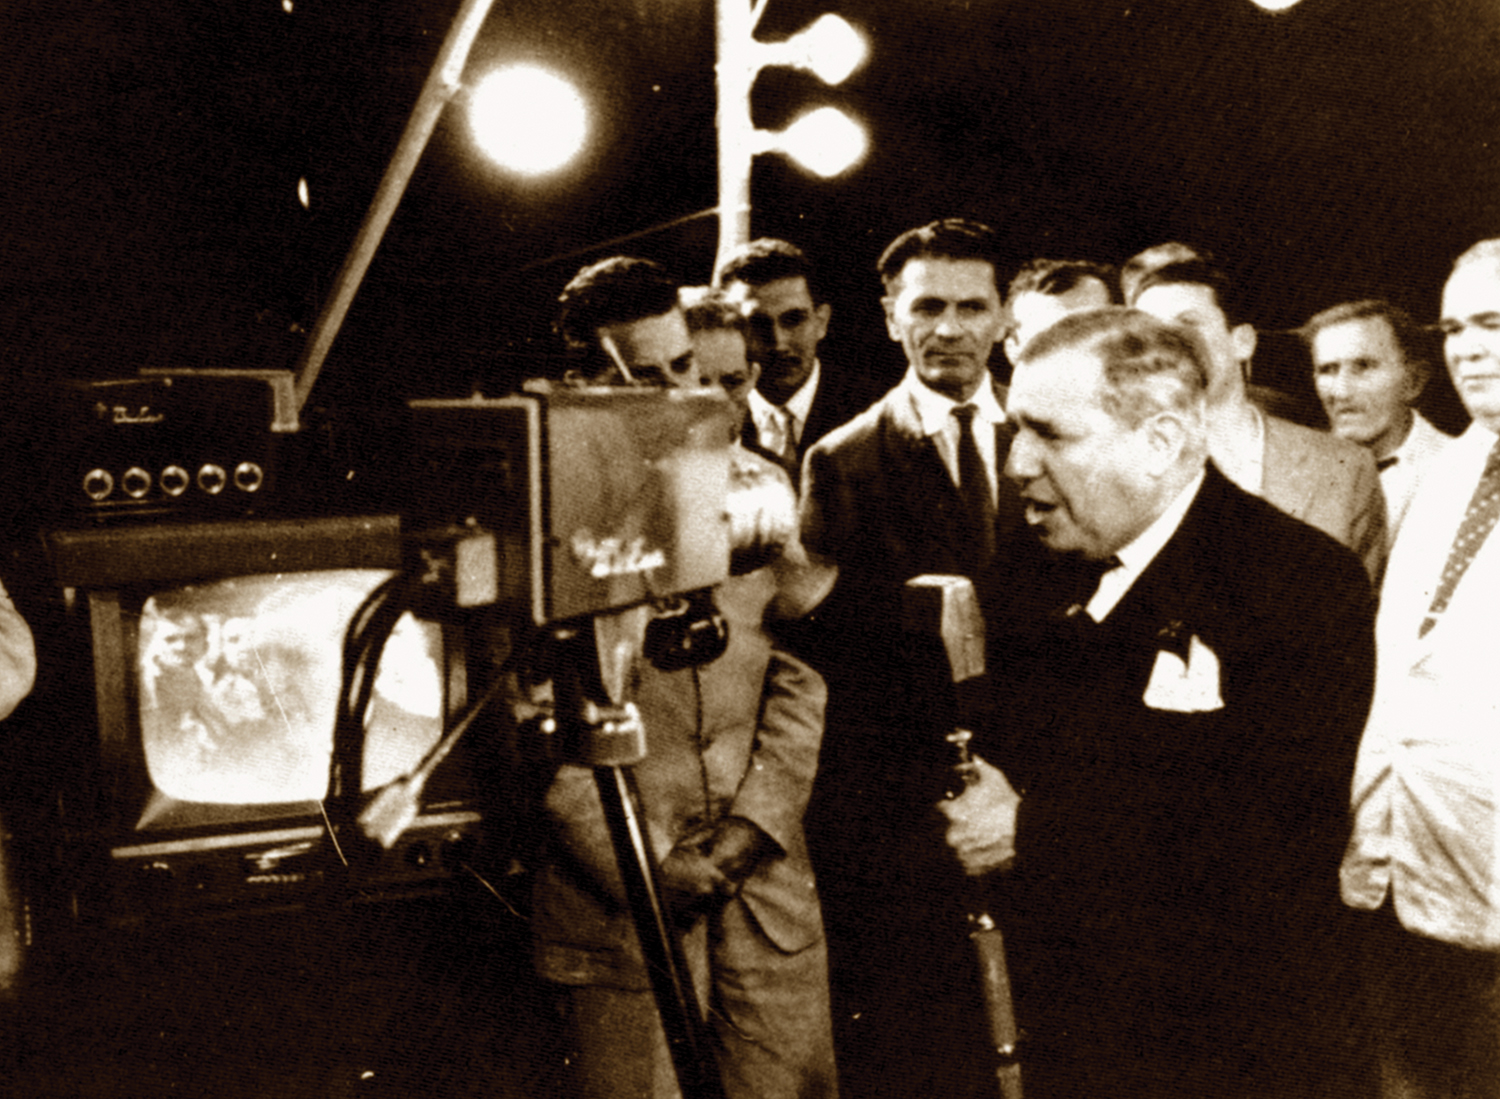 Assis Chateaubriand inaugura a TV Tupi, dando início à Era da Televisão no Brasil.